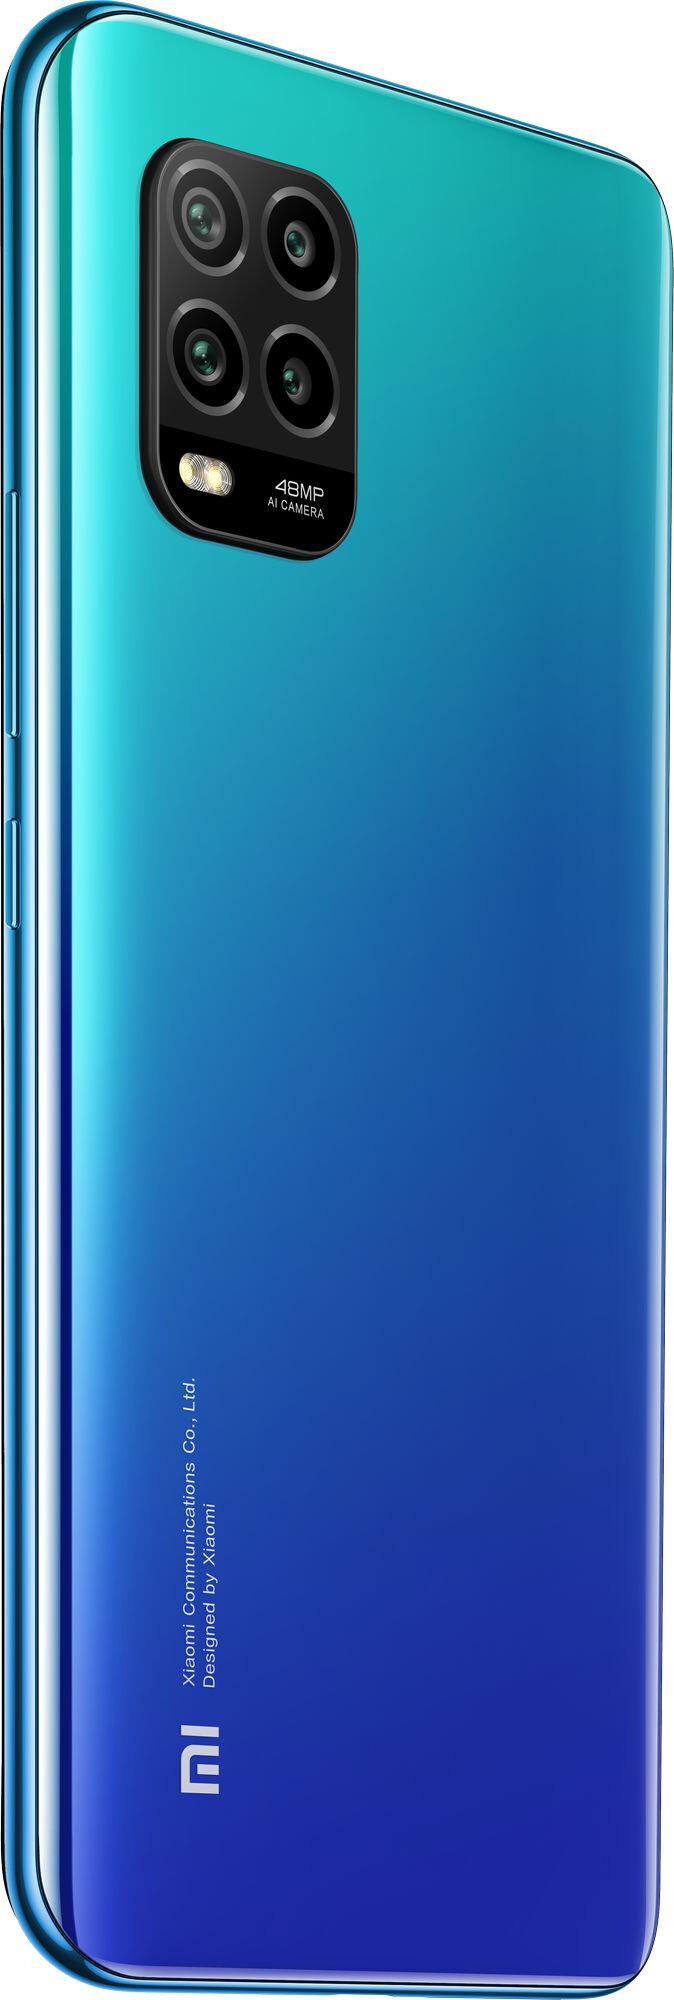 Купить Смартфон Xiaomi Mi 10 Lite 5G 6/64Gb Aurora Blue